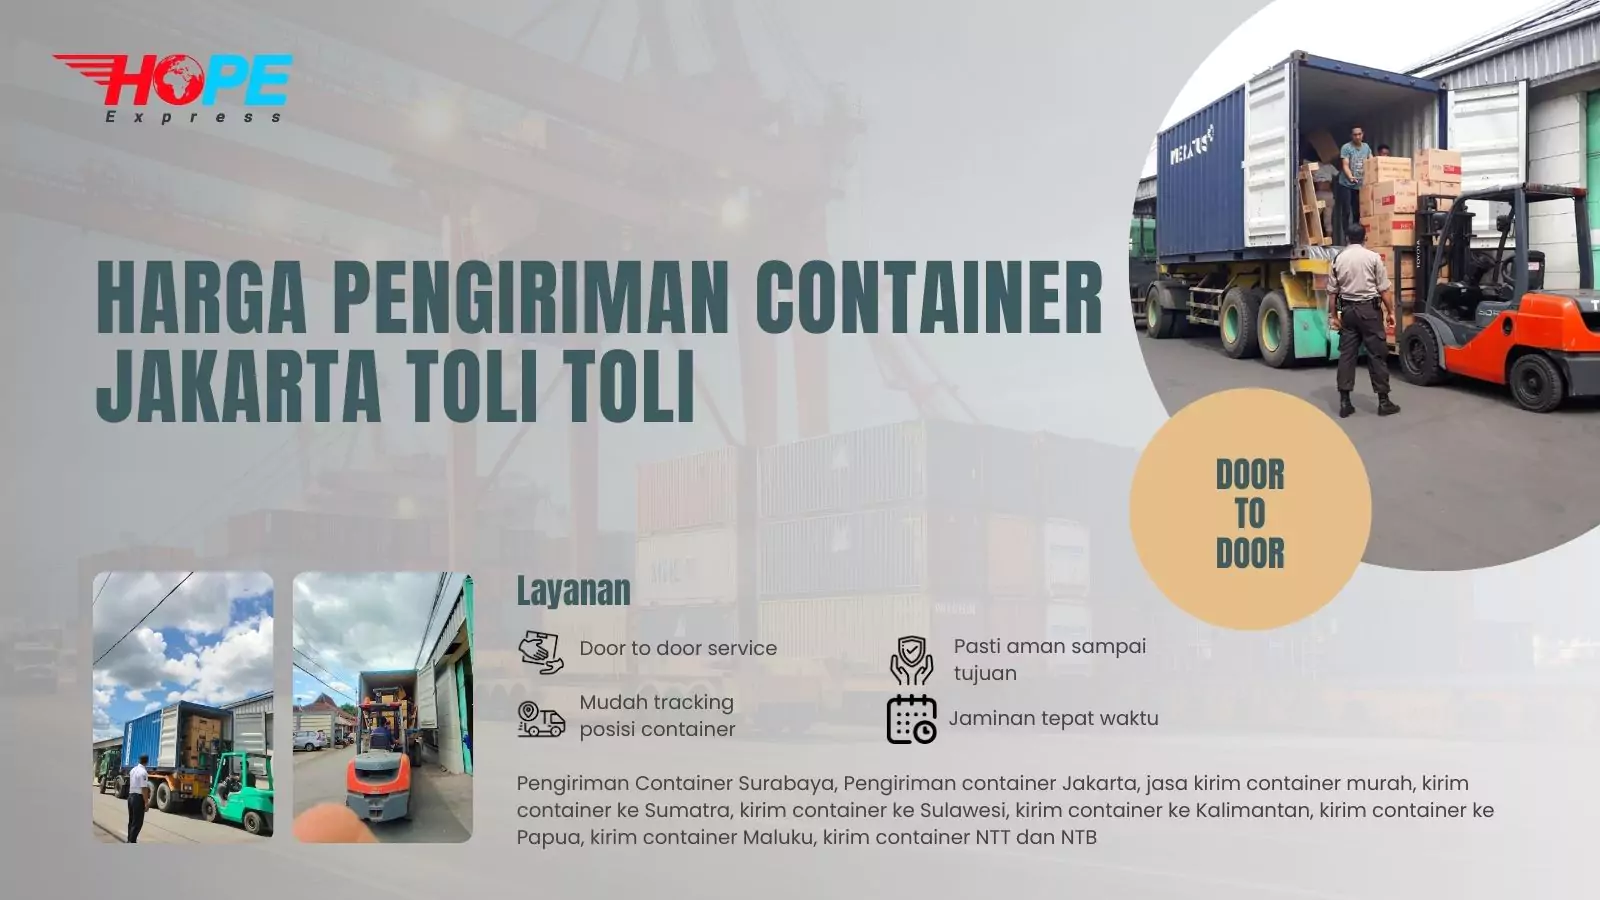 Harga Pengiriman Container Jakarta Toli Toli